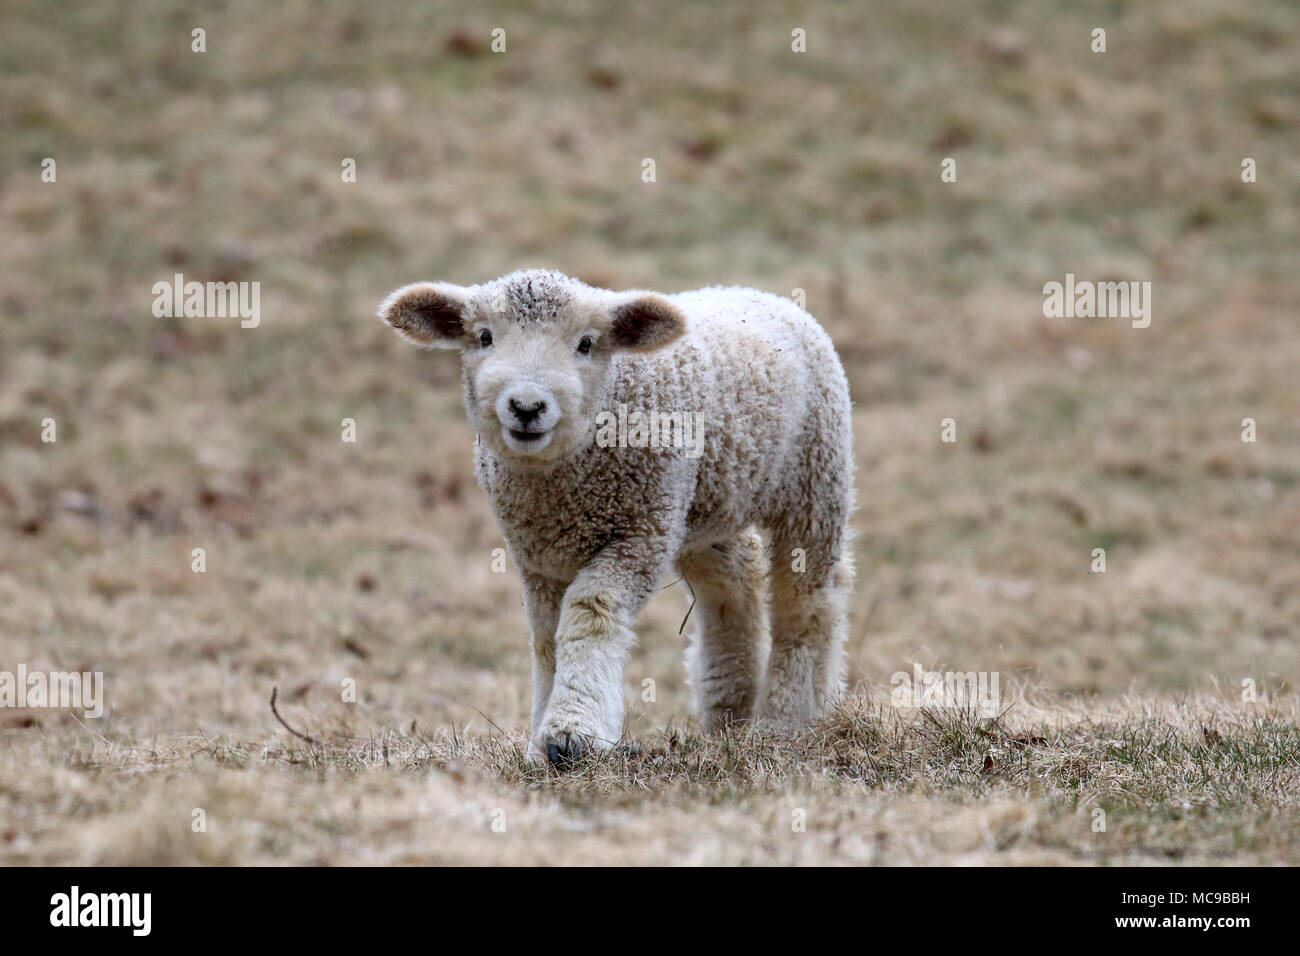 Un agneau laineux blanc marcher dans un champ au printemps Banque D'Images